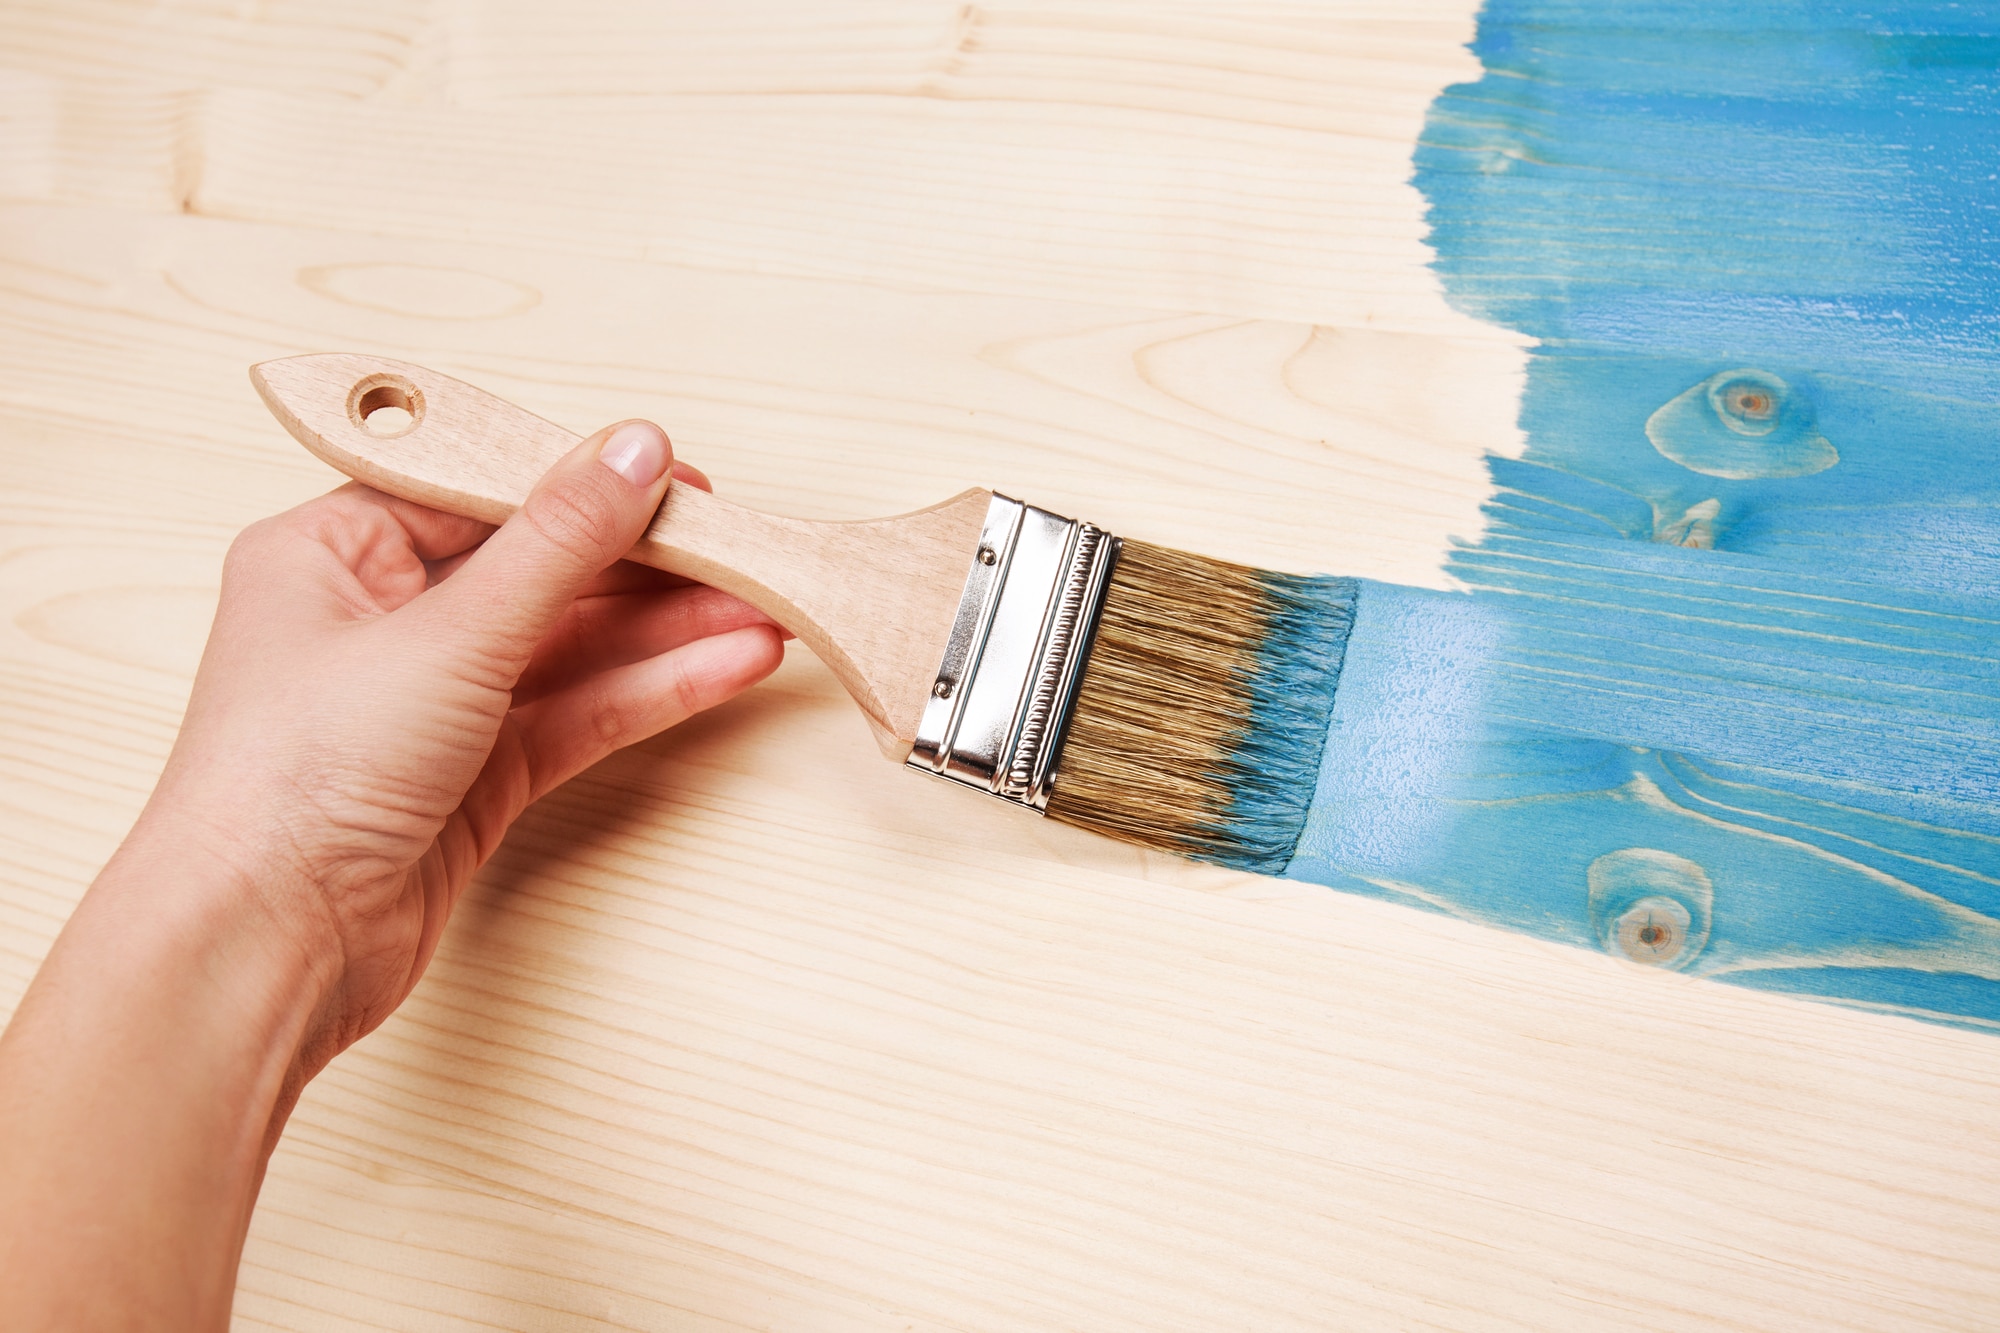 Qué tipo de pintura se usa para la madera?